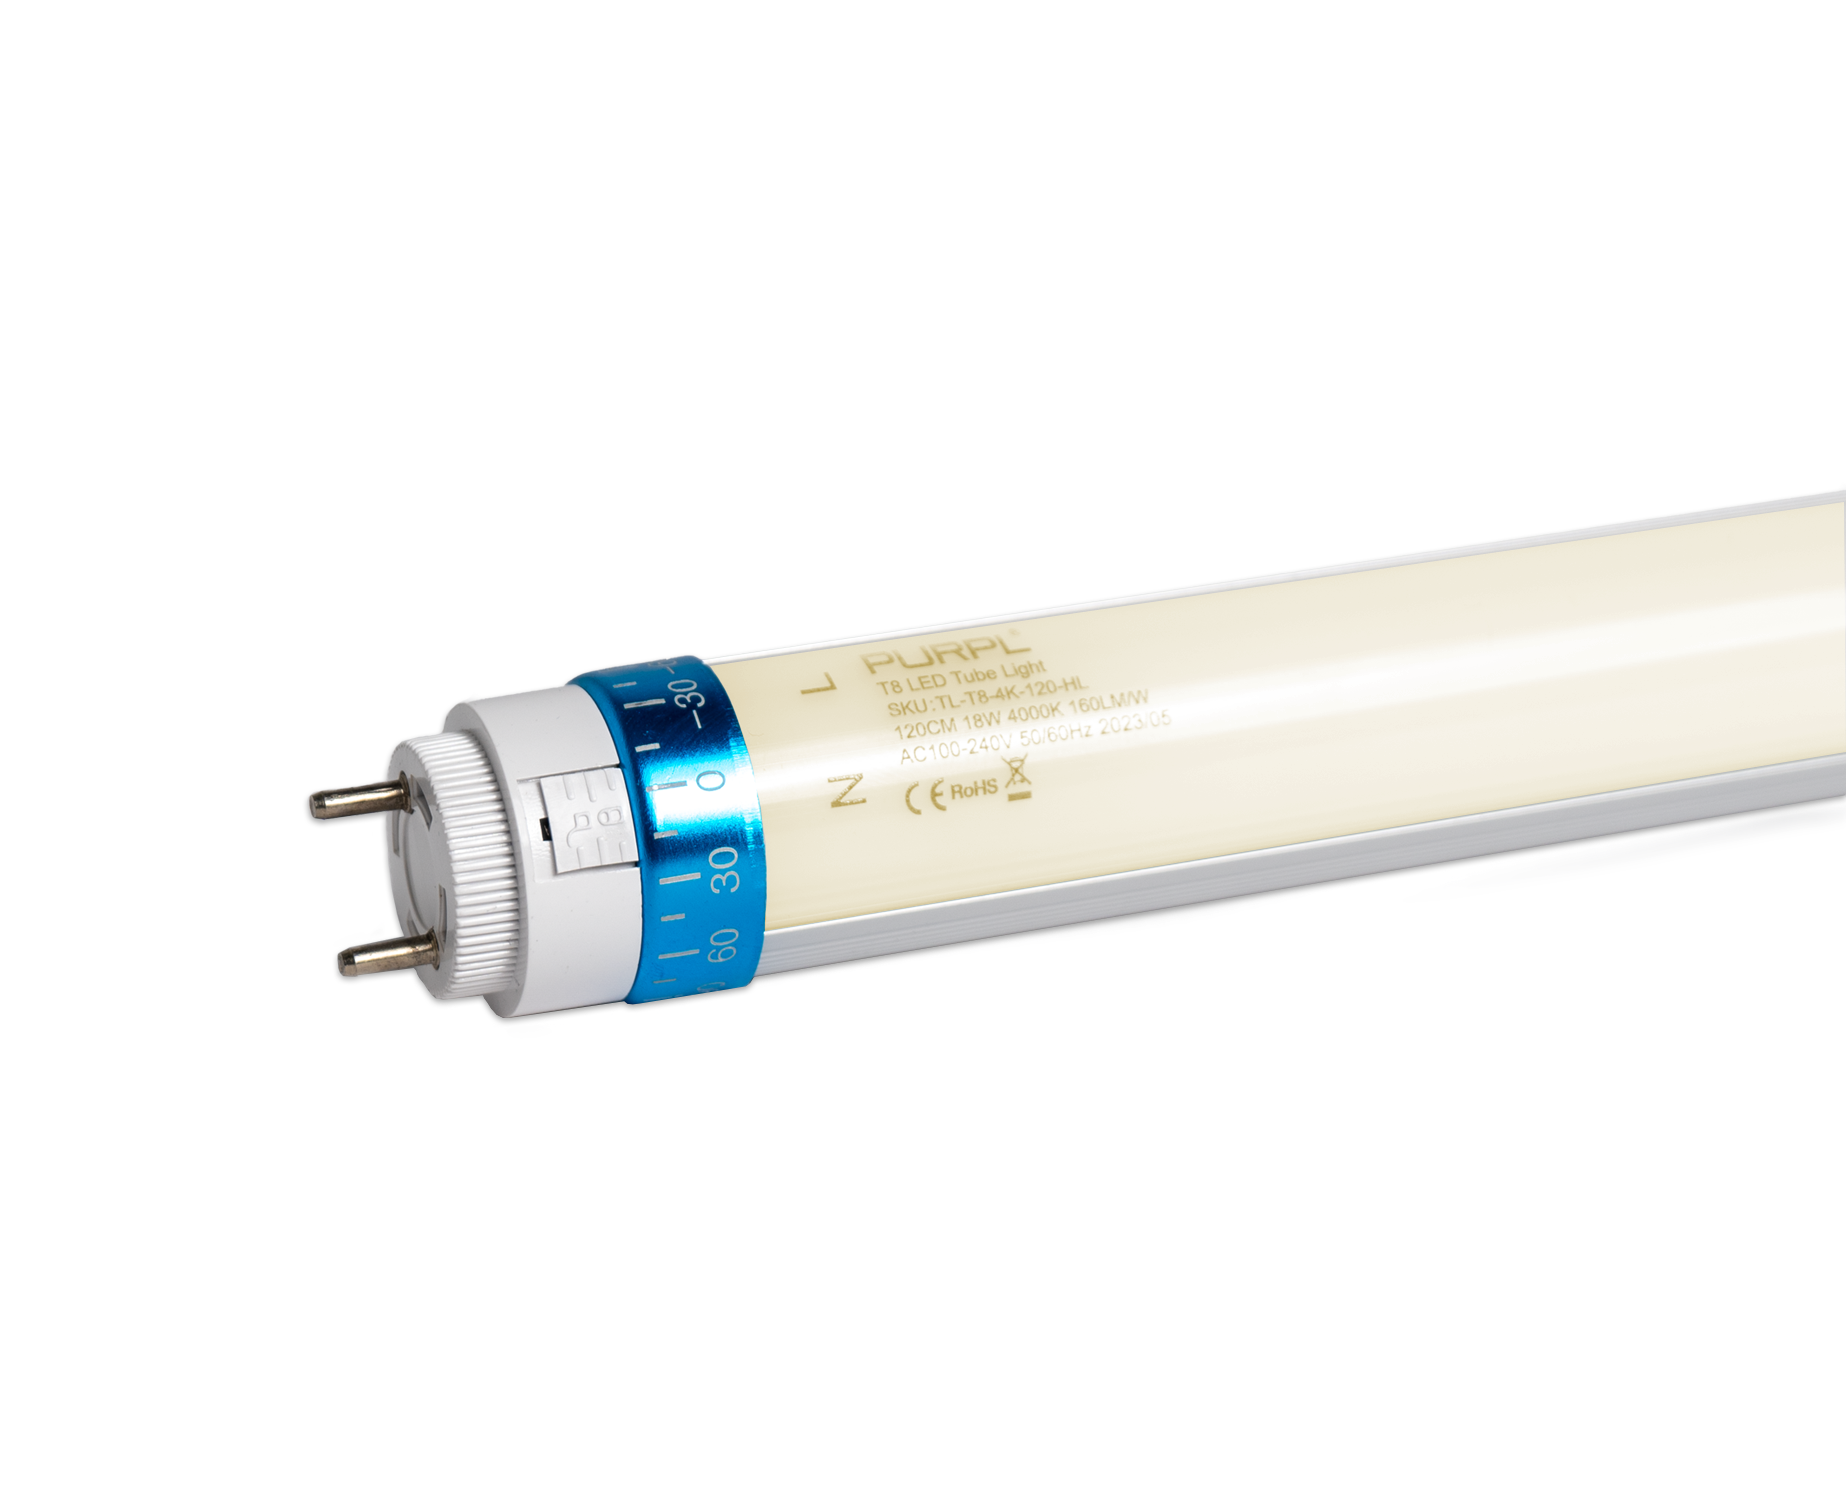 Tube LED T8 - 120 cm - TRUE-LIGHT lumière du jour 20W